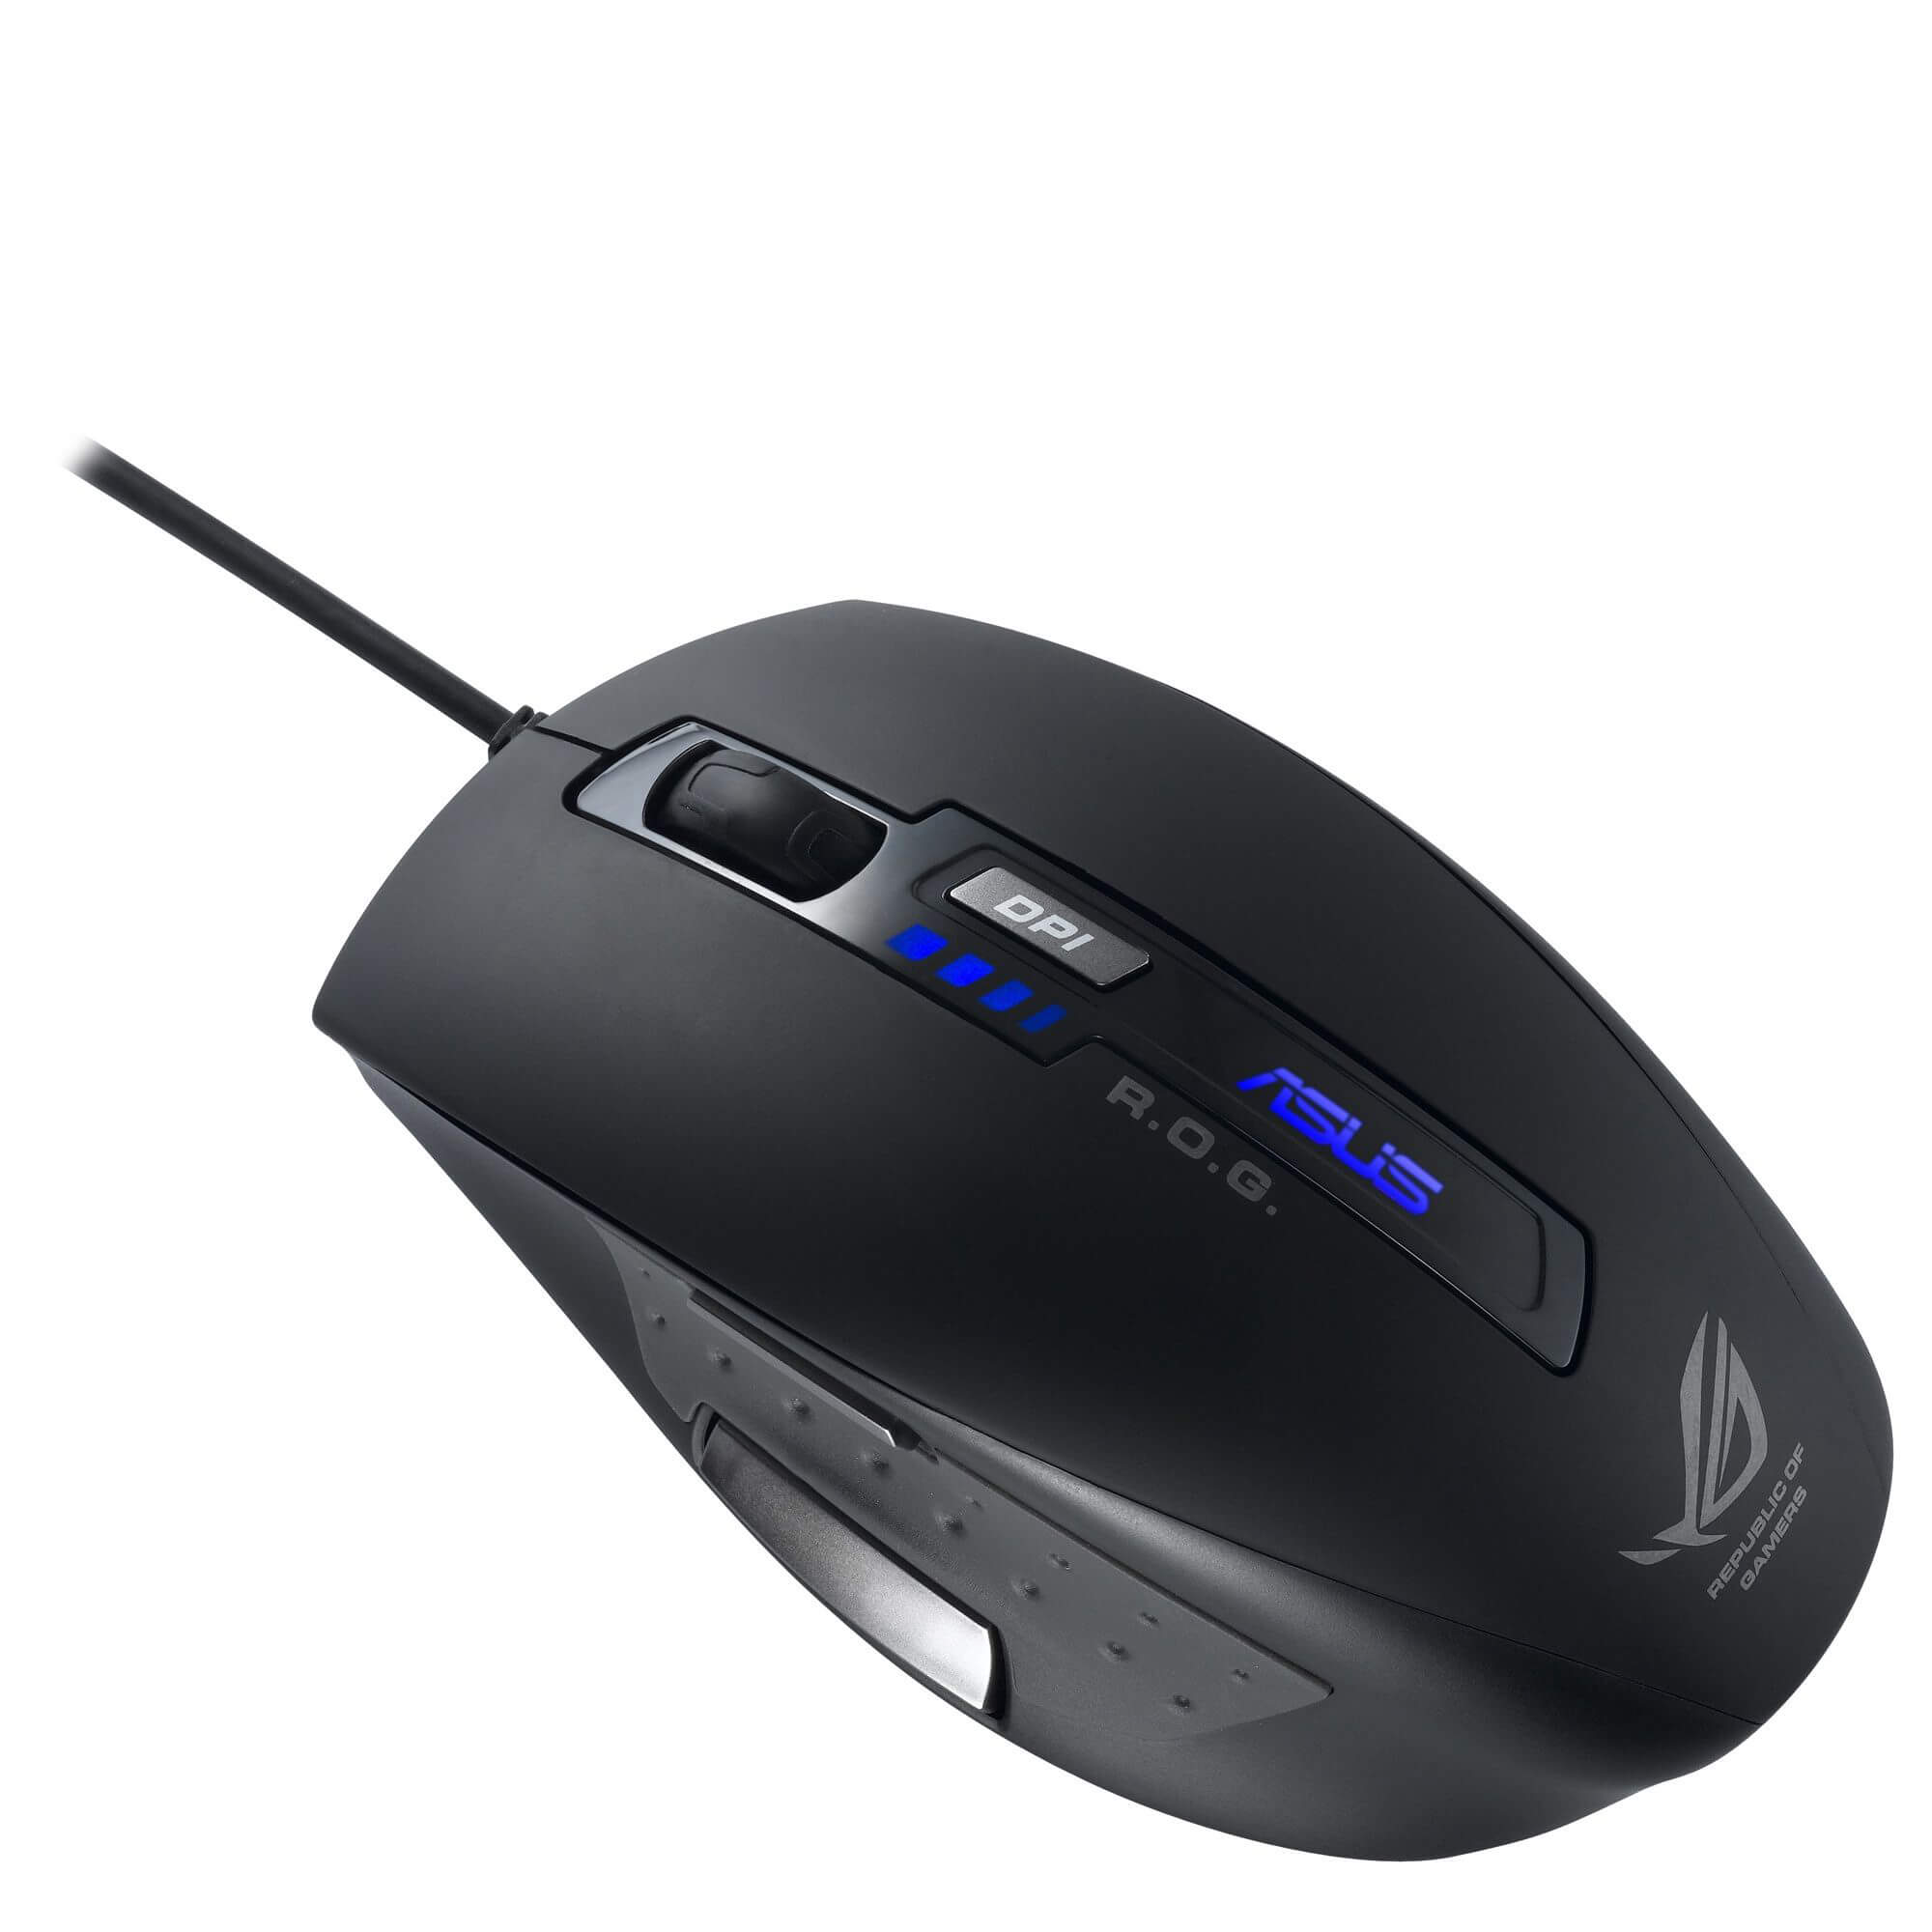  Mouse gaming Asus ROG GX850, 5000 dpi 